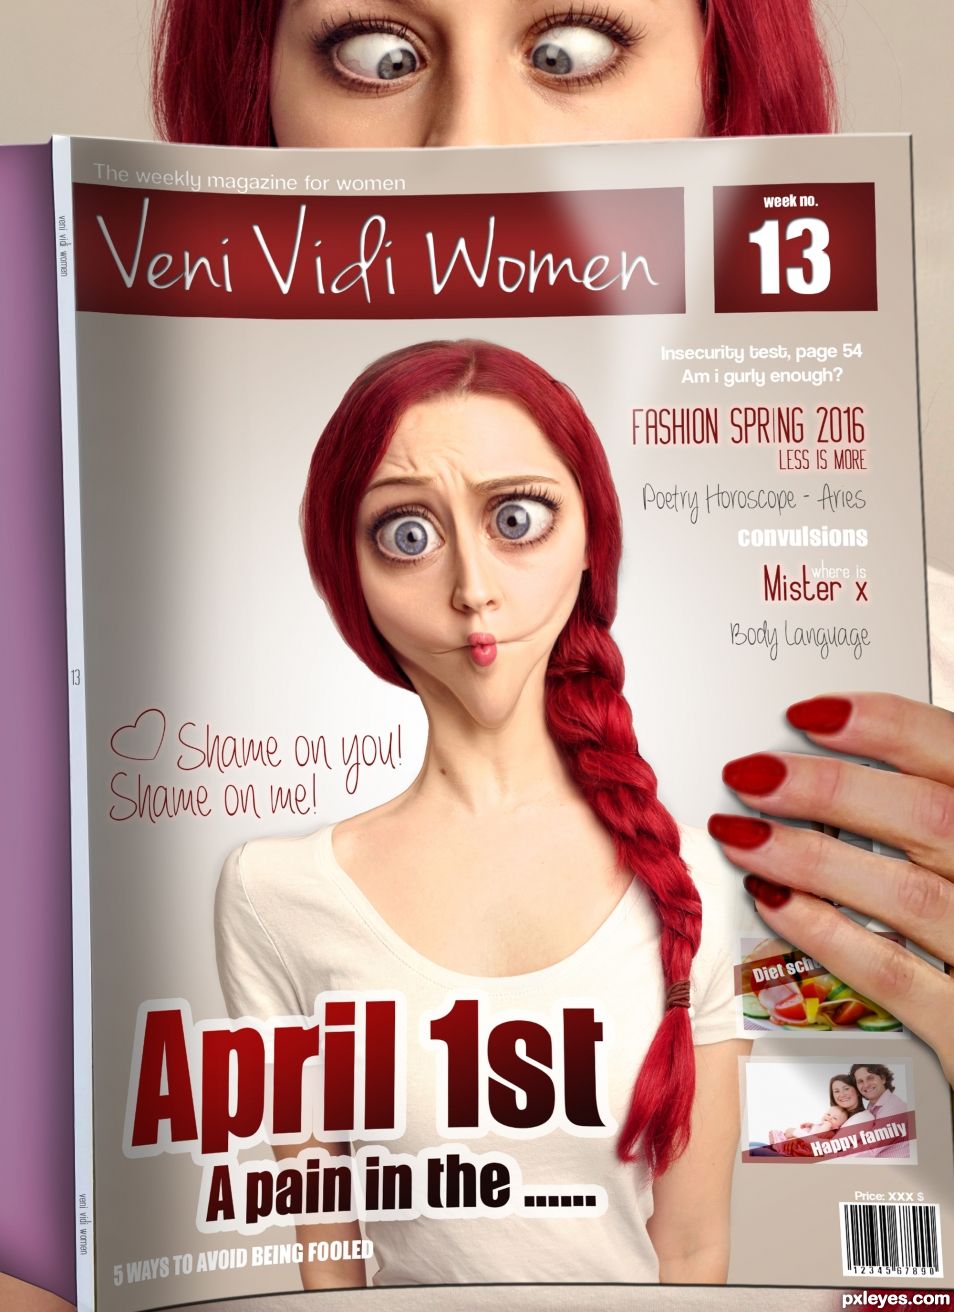 Creation of Veni Vidi Women: Final Result